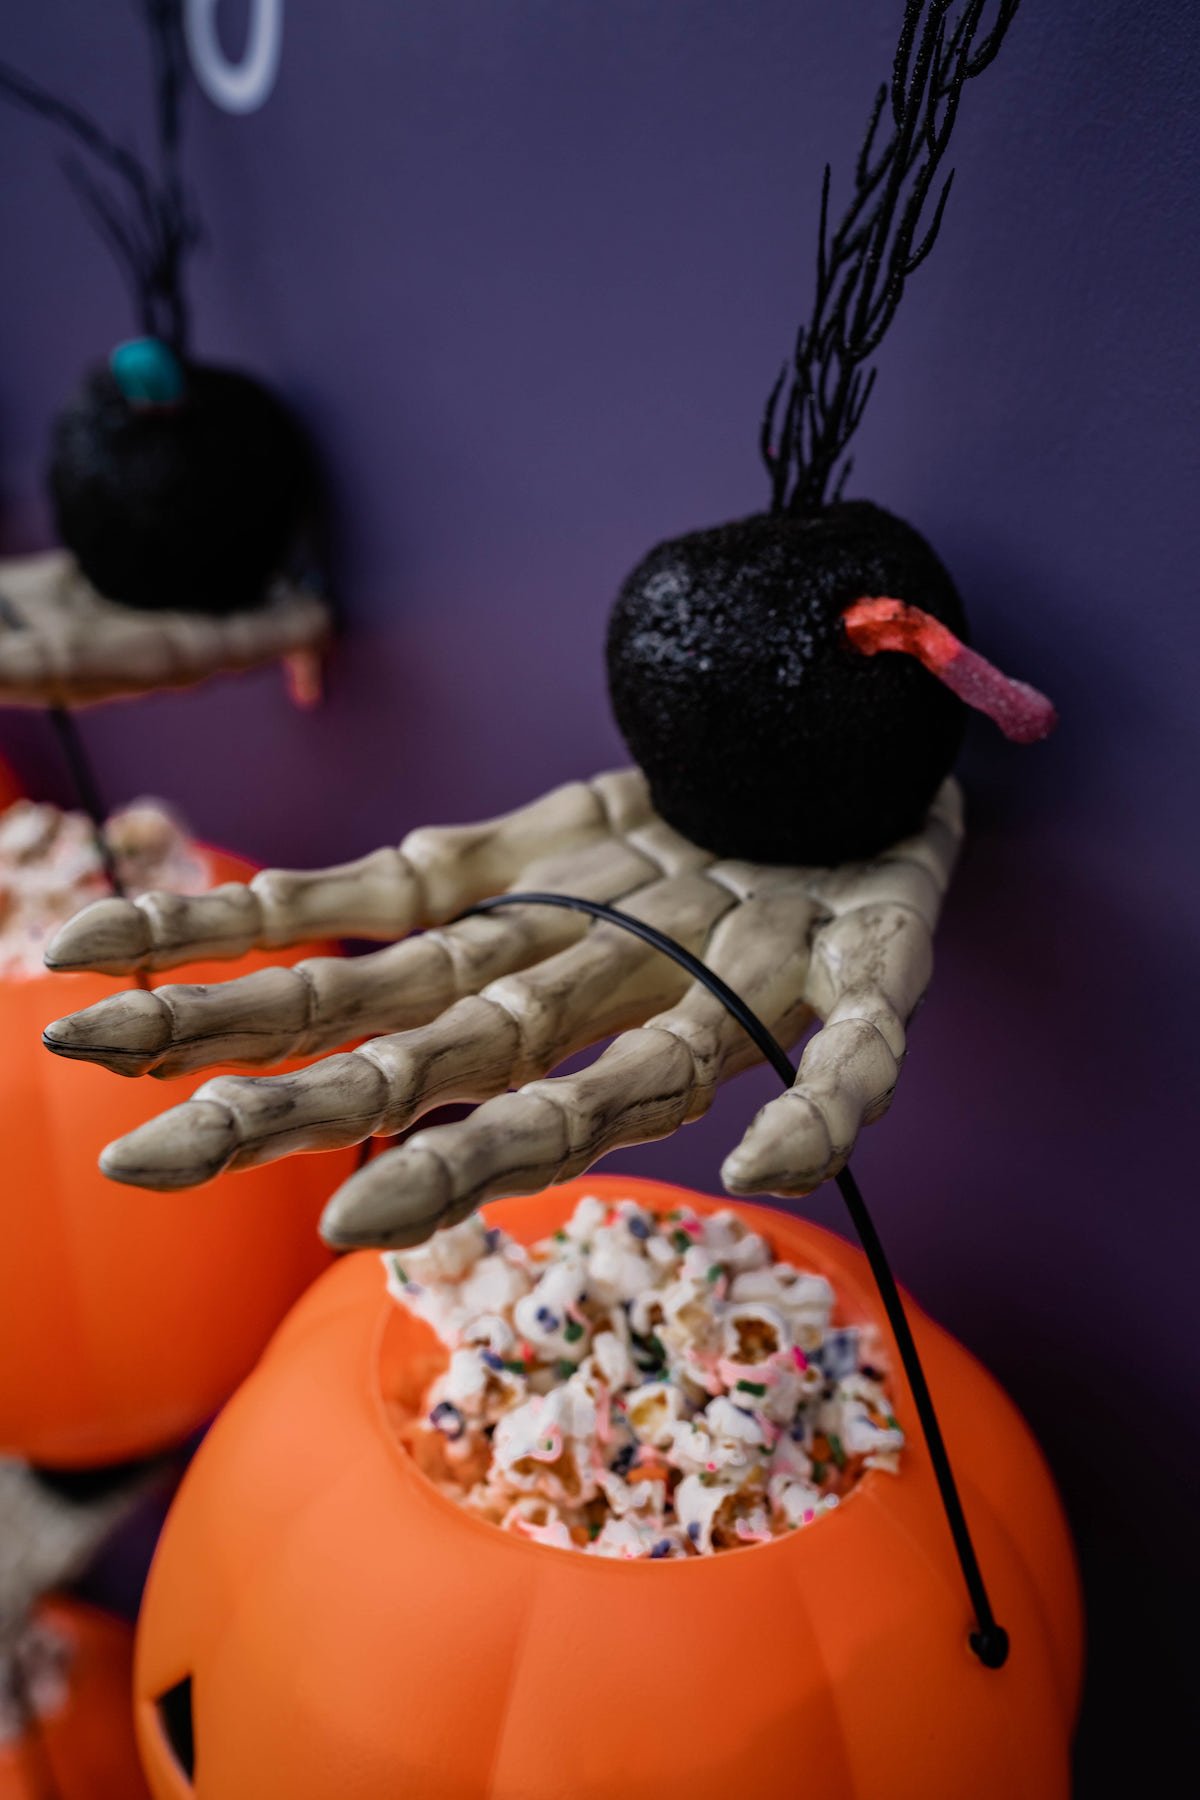 Creepy skeleton hands holding pumpkins filled with popcorn